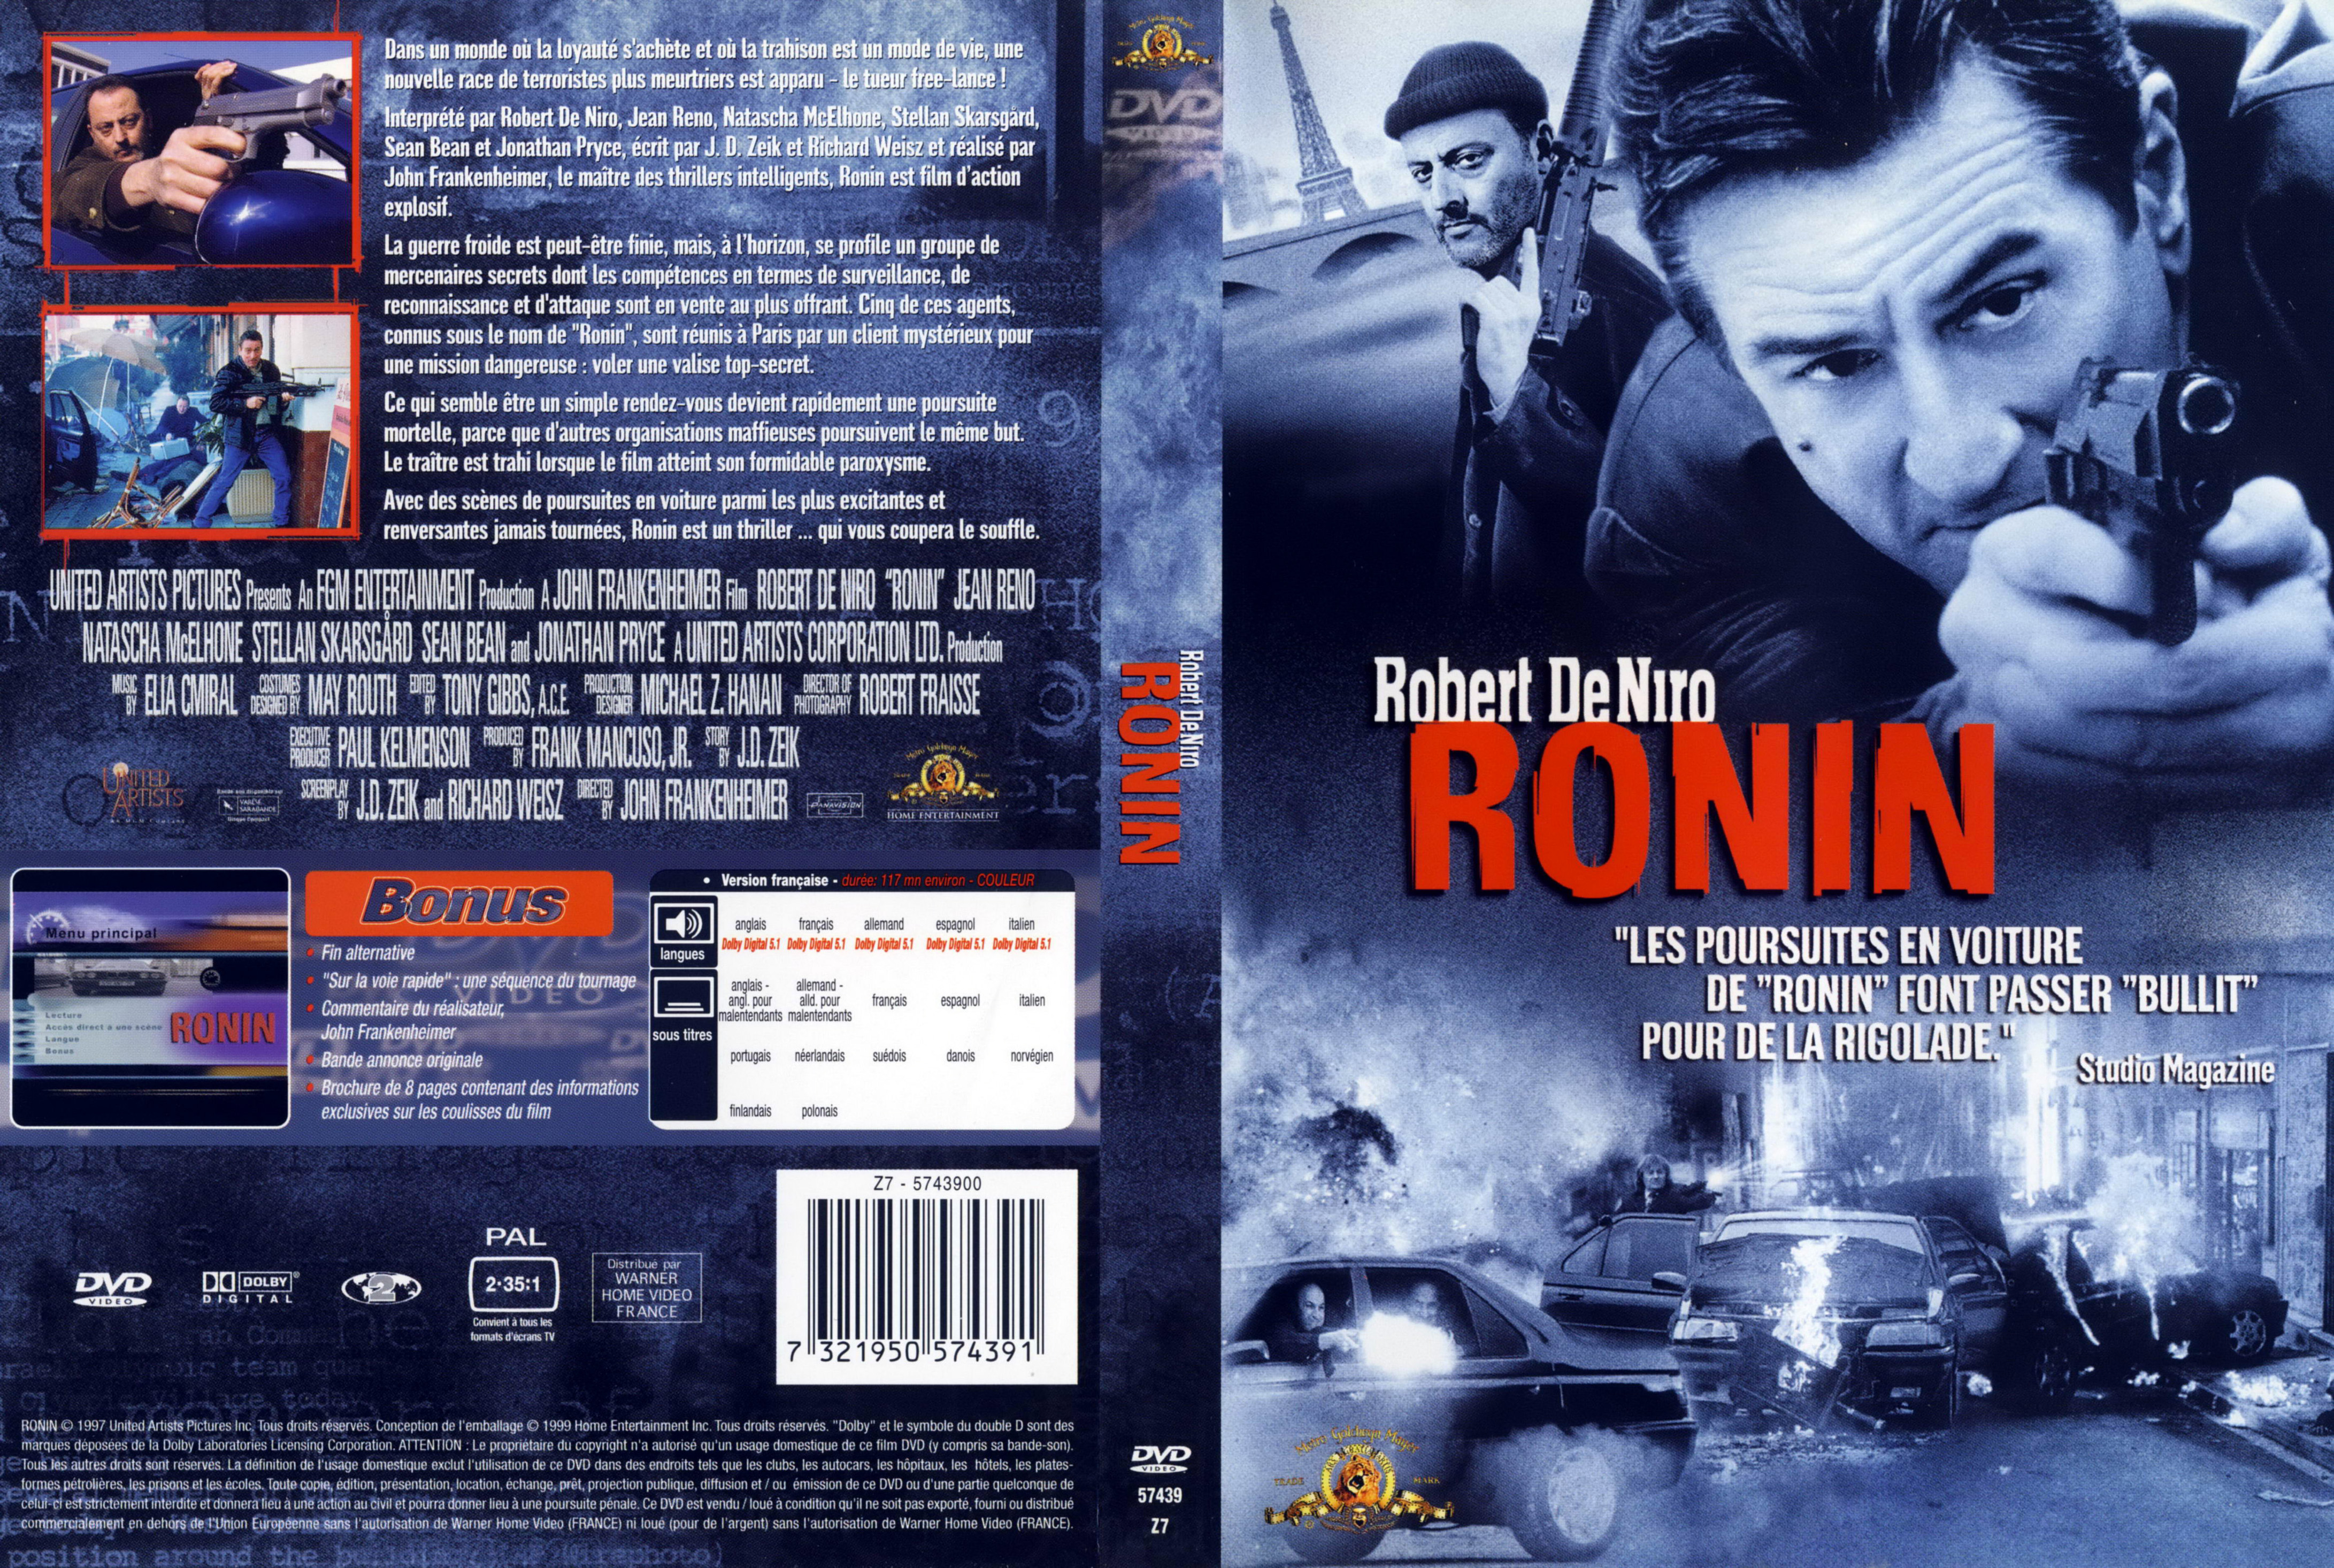 Jaquette DVD Ronin v2